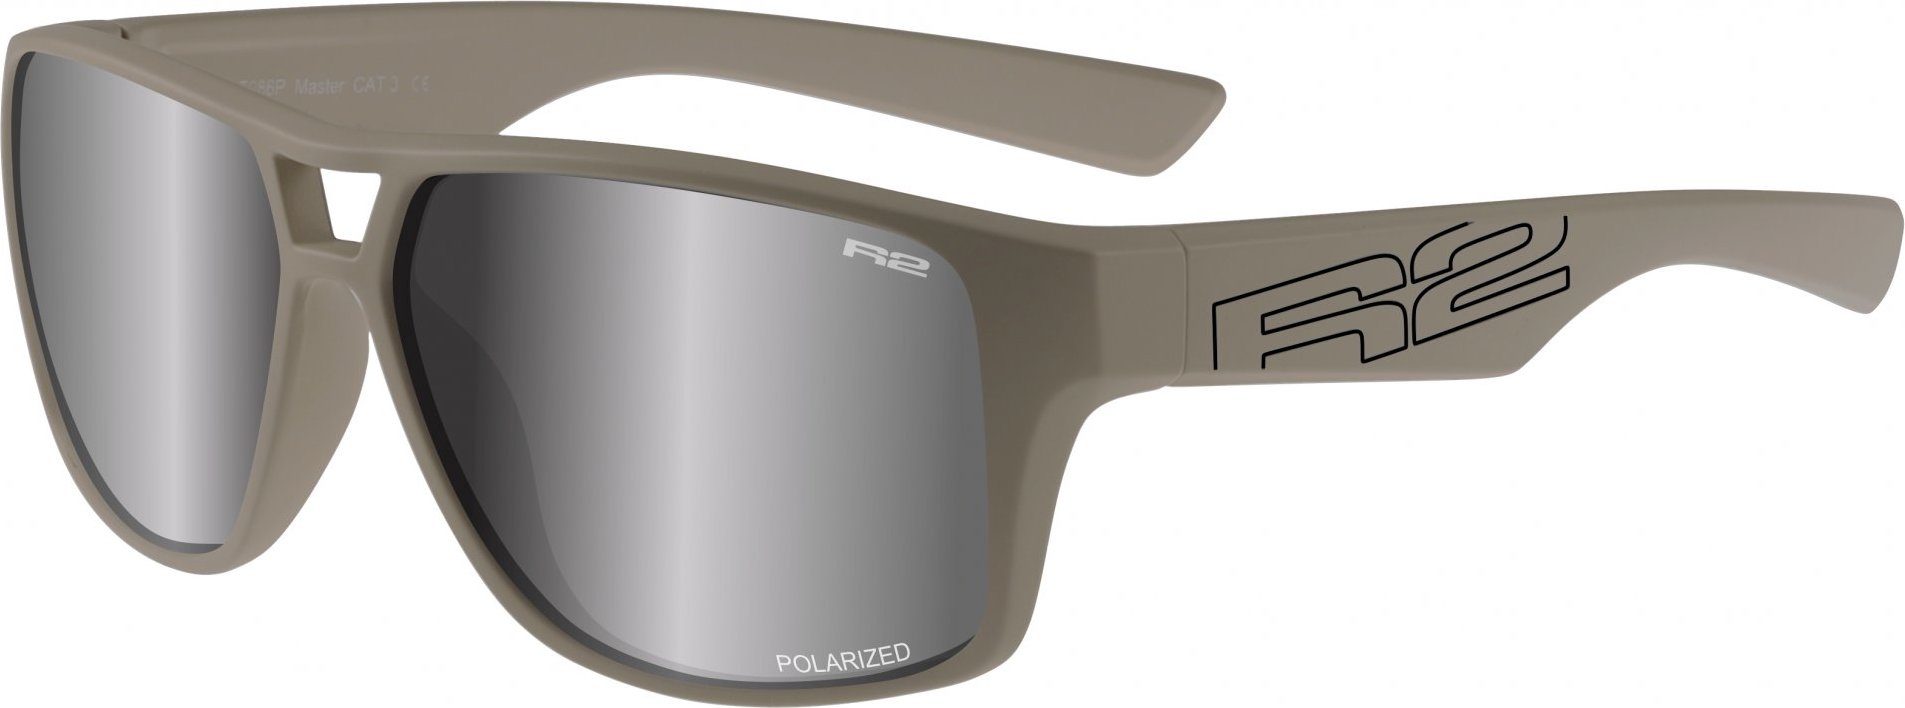 Sportovní sluneční brýle R2 Master šedé